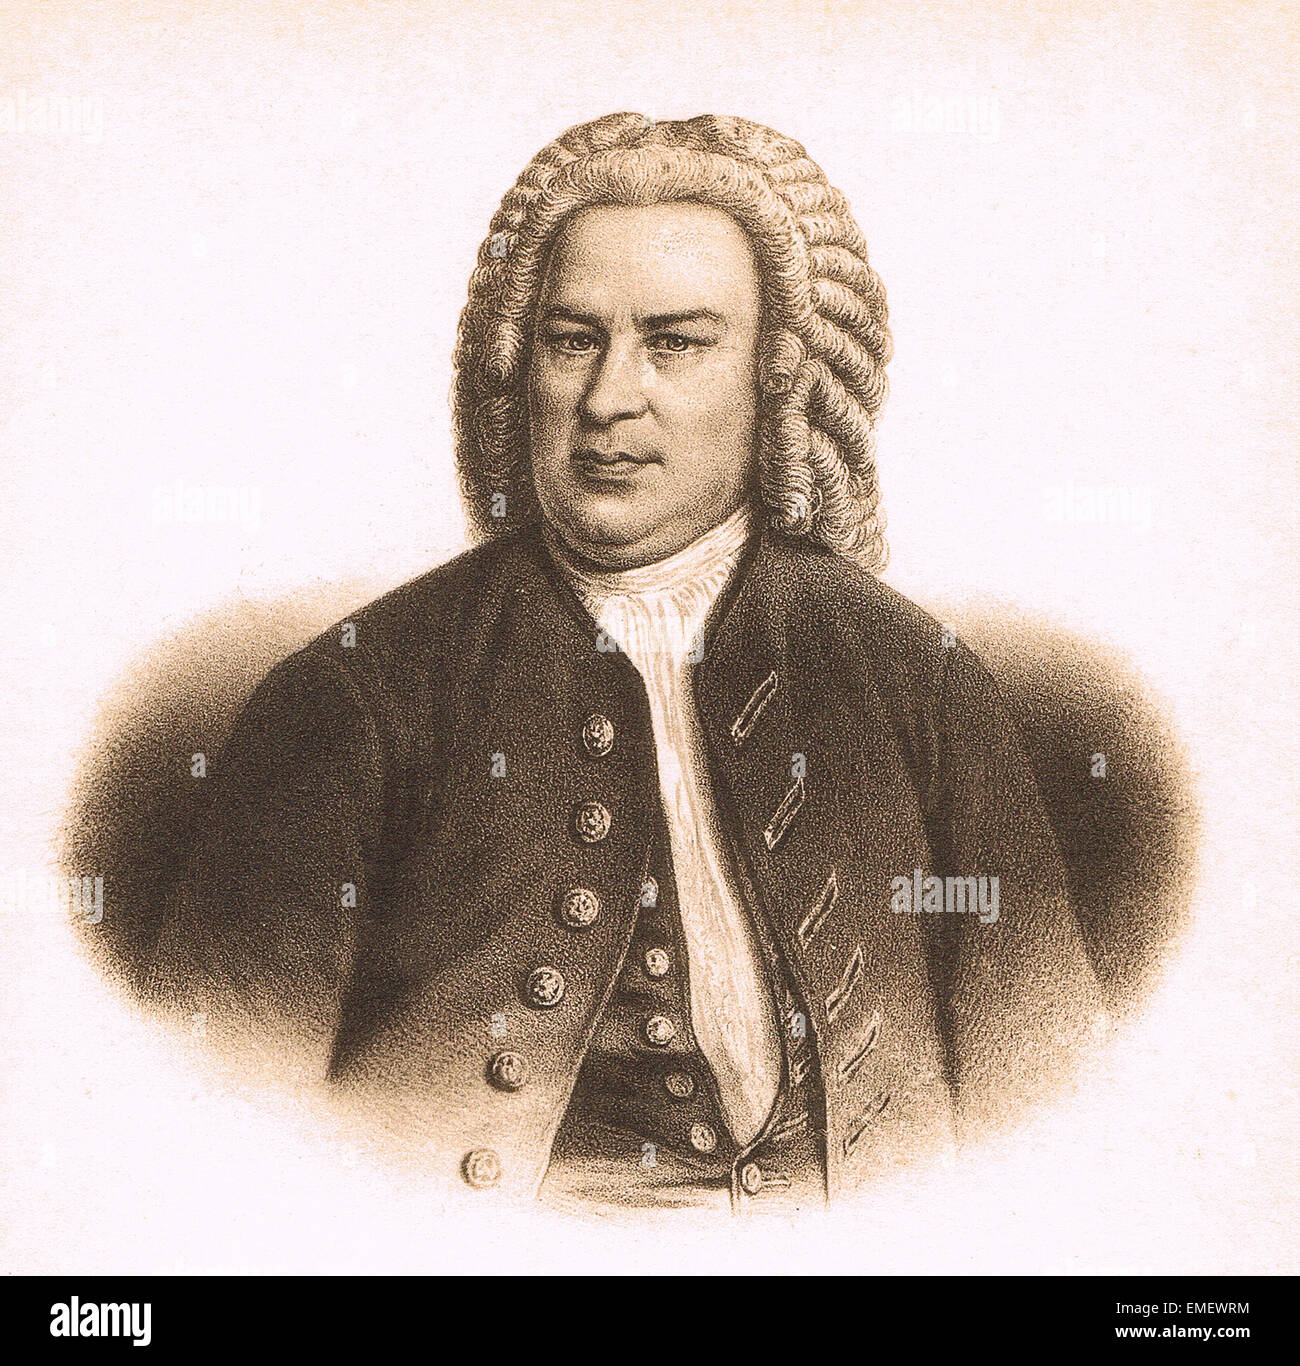 Johann Sebastian Bach (1685 - 1750) fue un compositor y músico alemán de la época barroca. Foto de stock